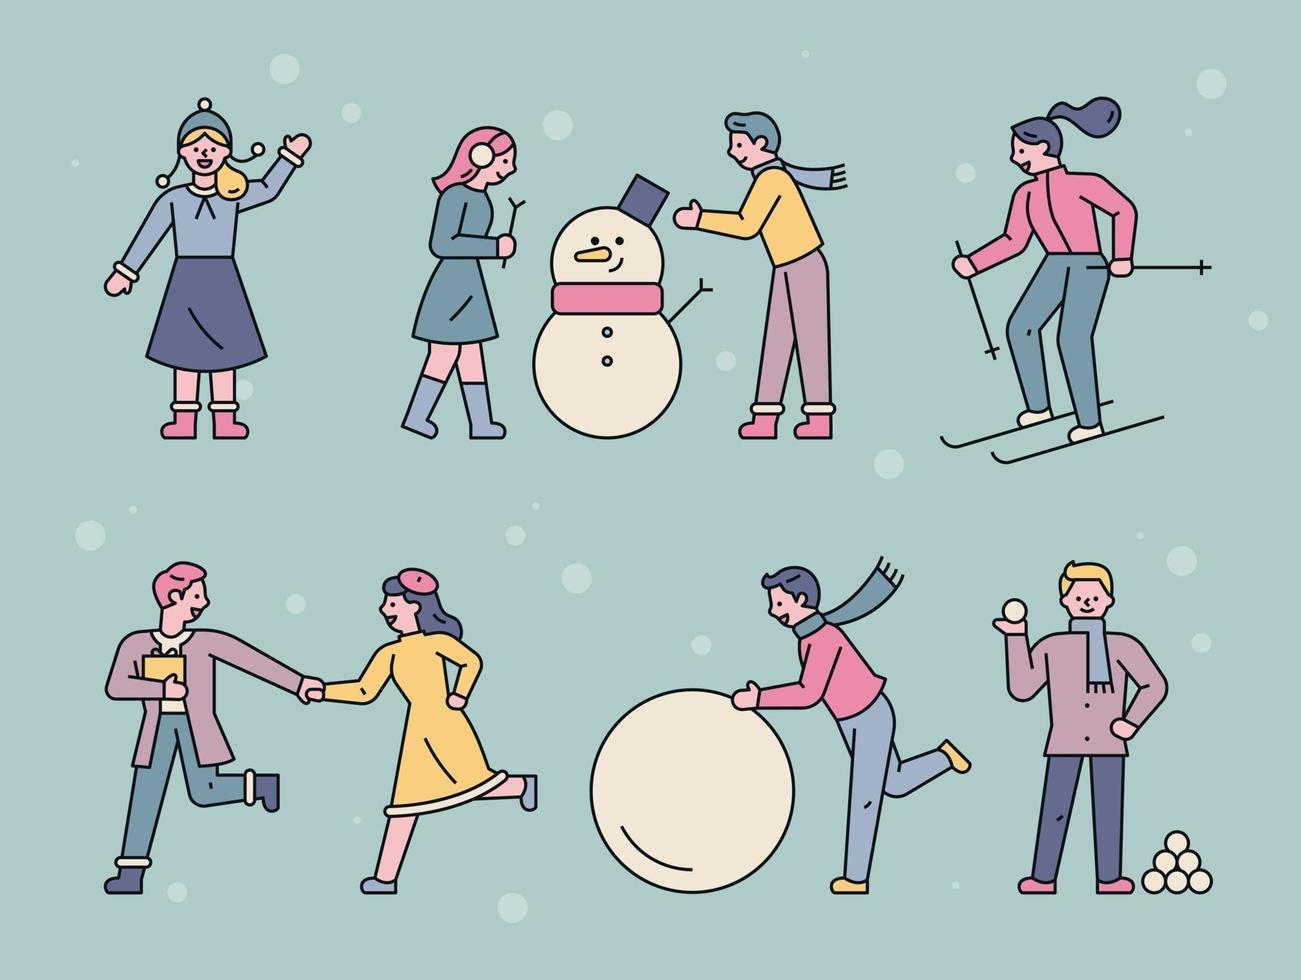 människor som leker ute på en snöig dag. vektor